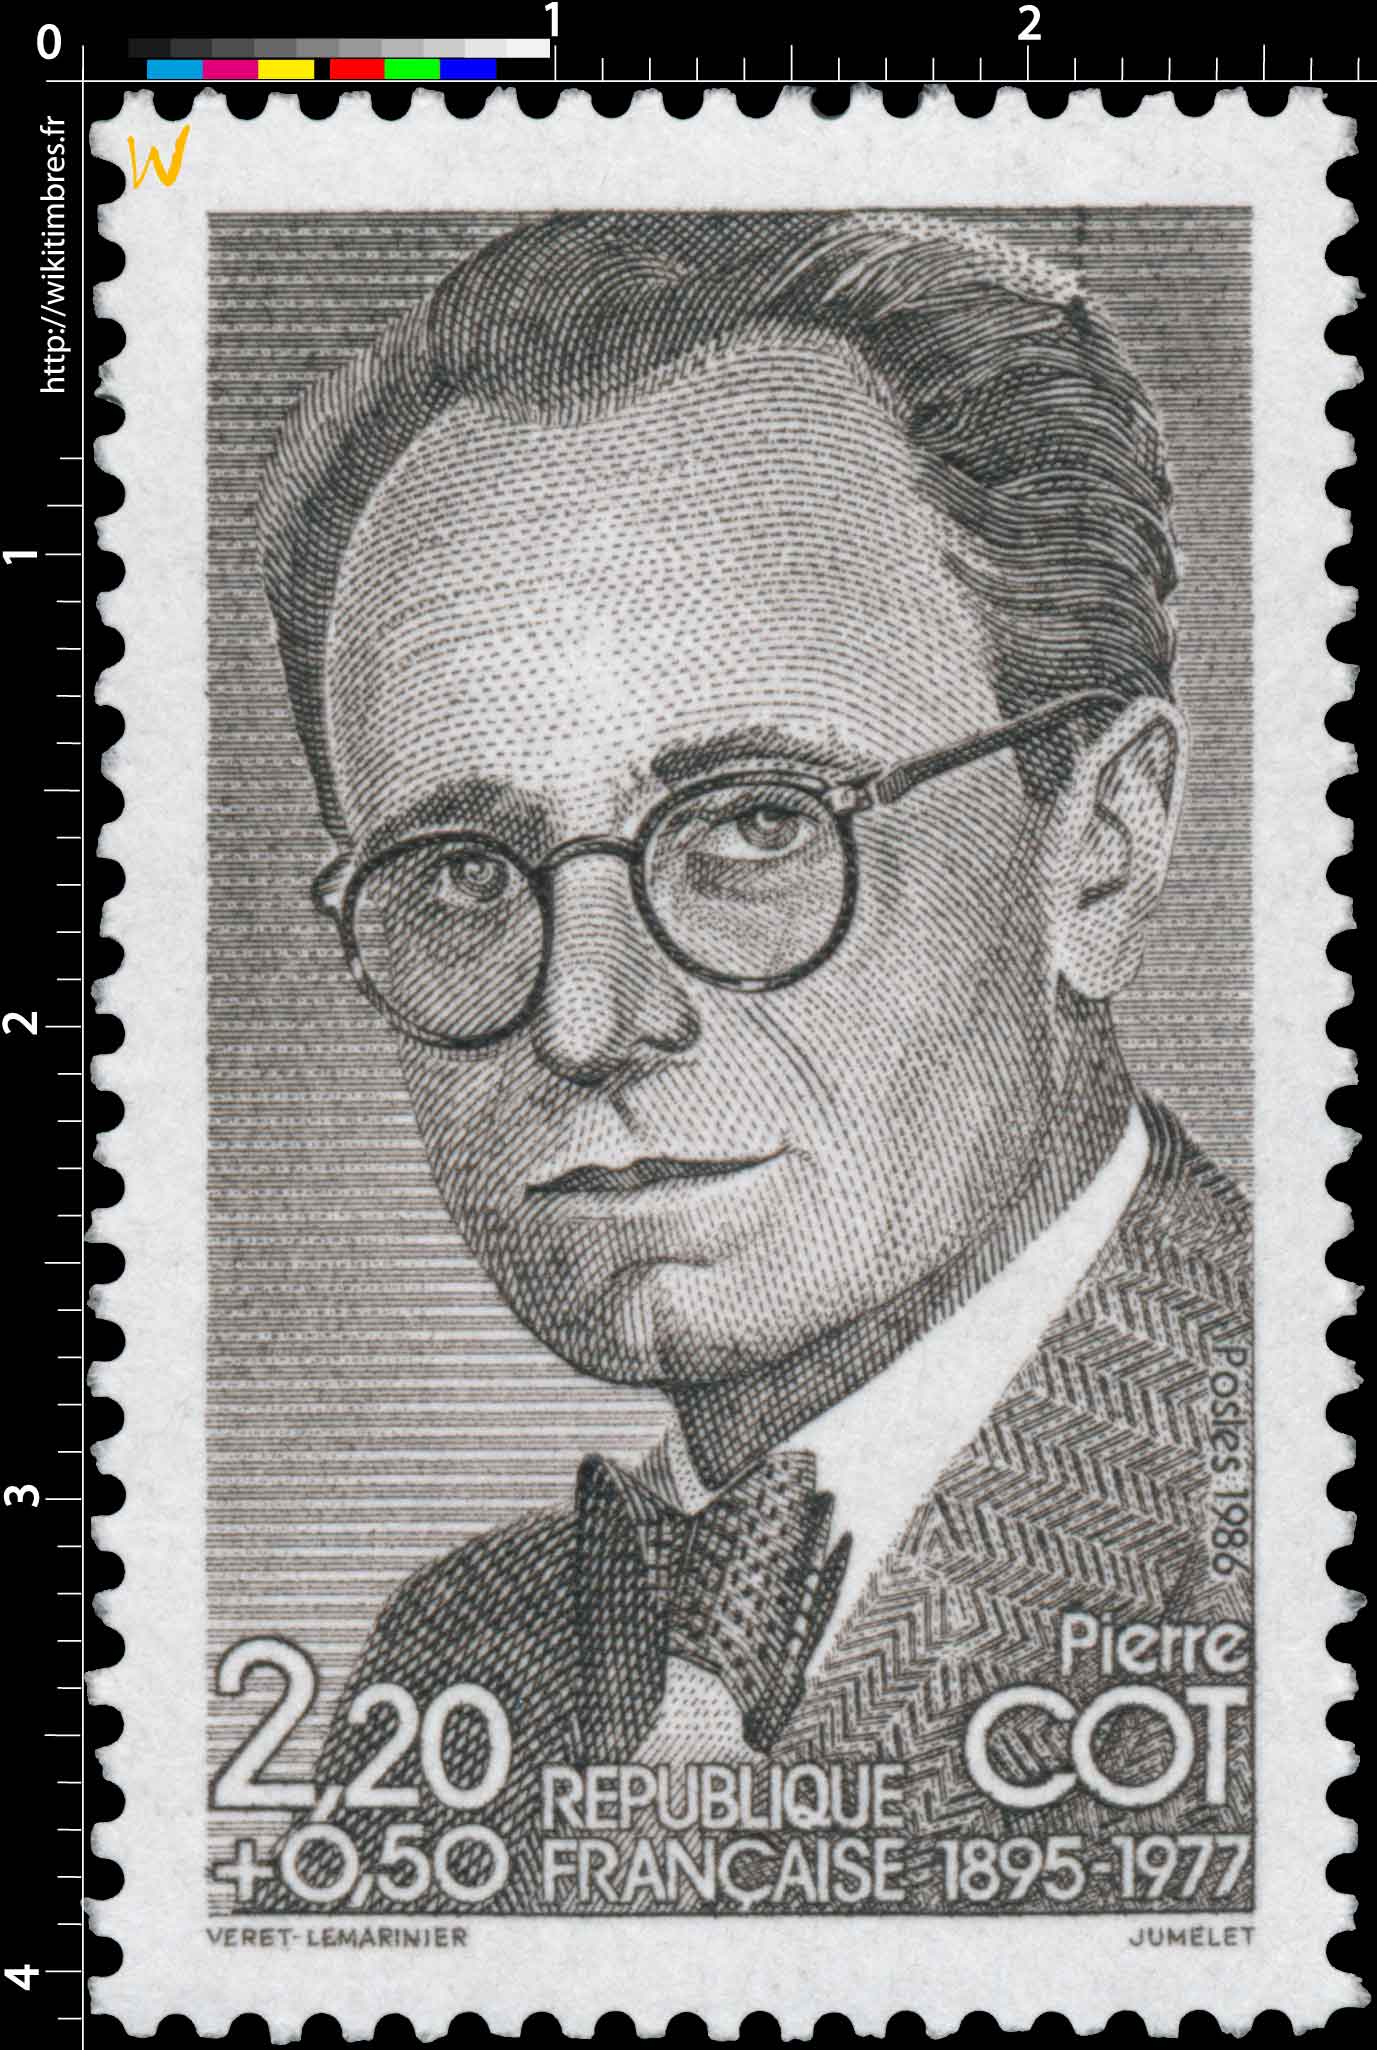 Pierre COT 1895-1977